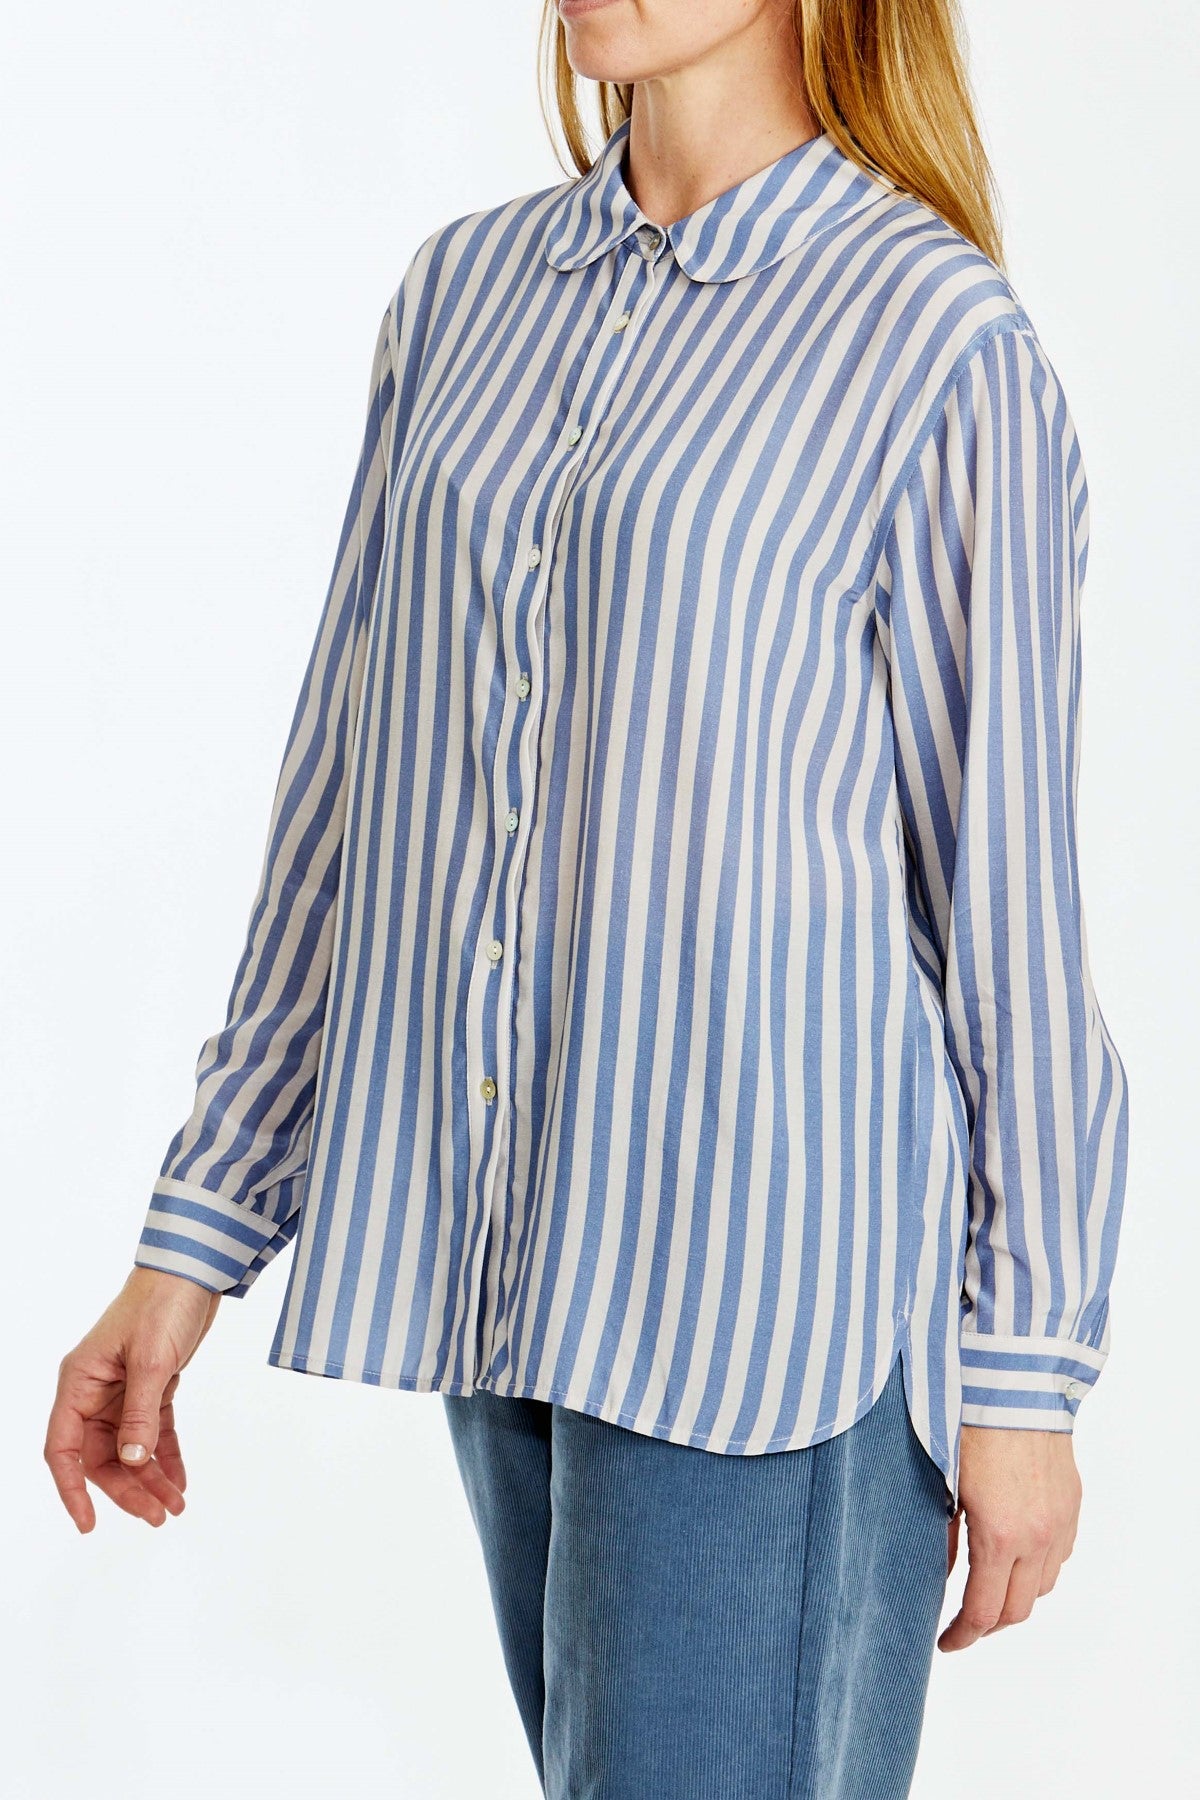 Stripe Shirt Denim / Chino